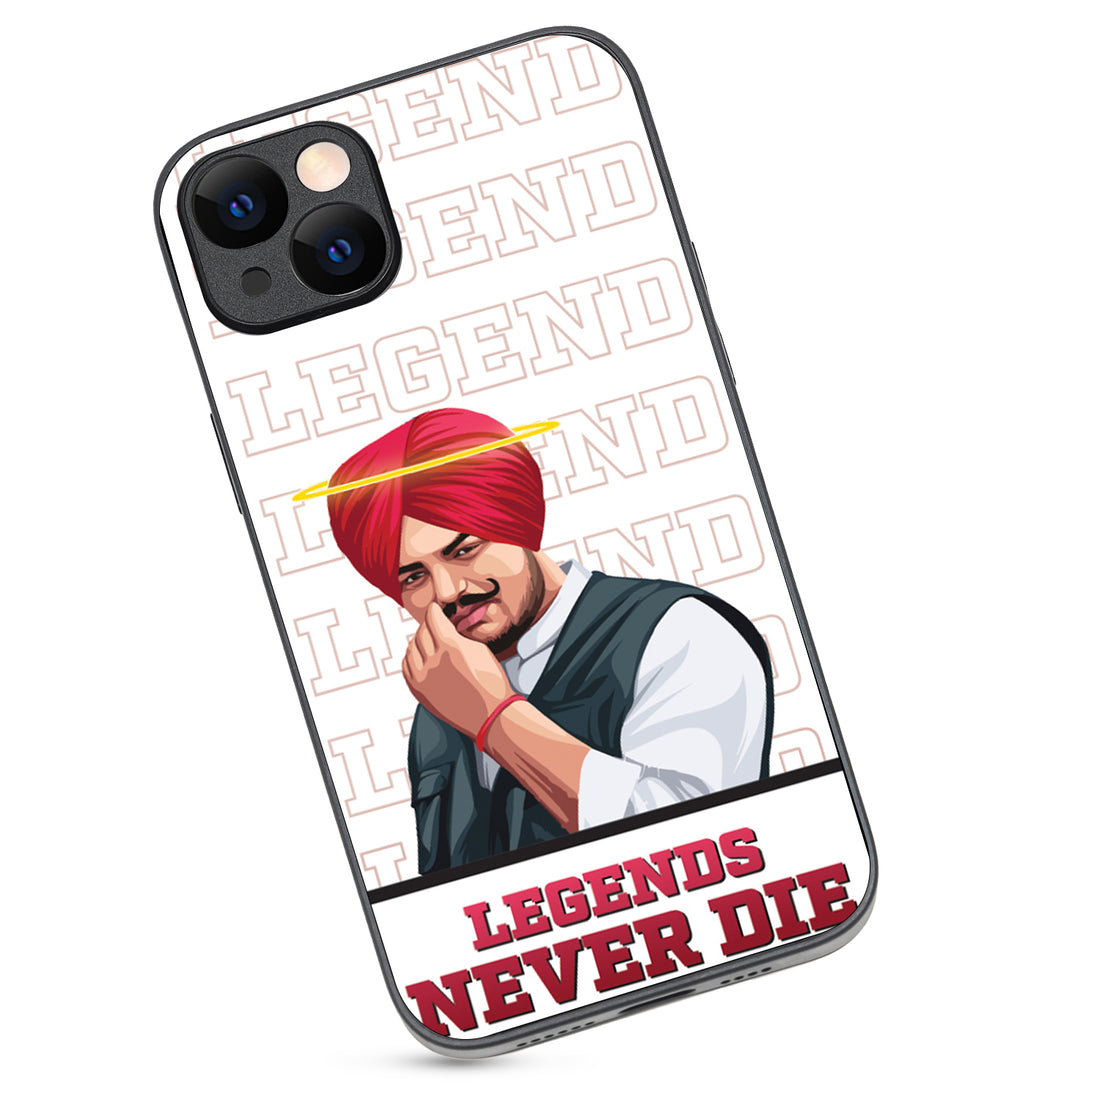 Legend Never Die Sidhu Moosewala iPhone 14 Plus Case